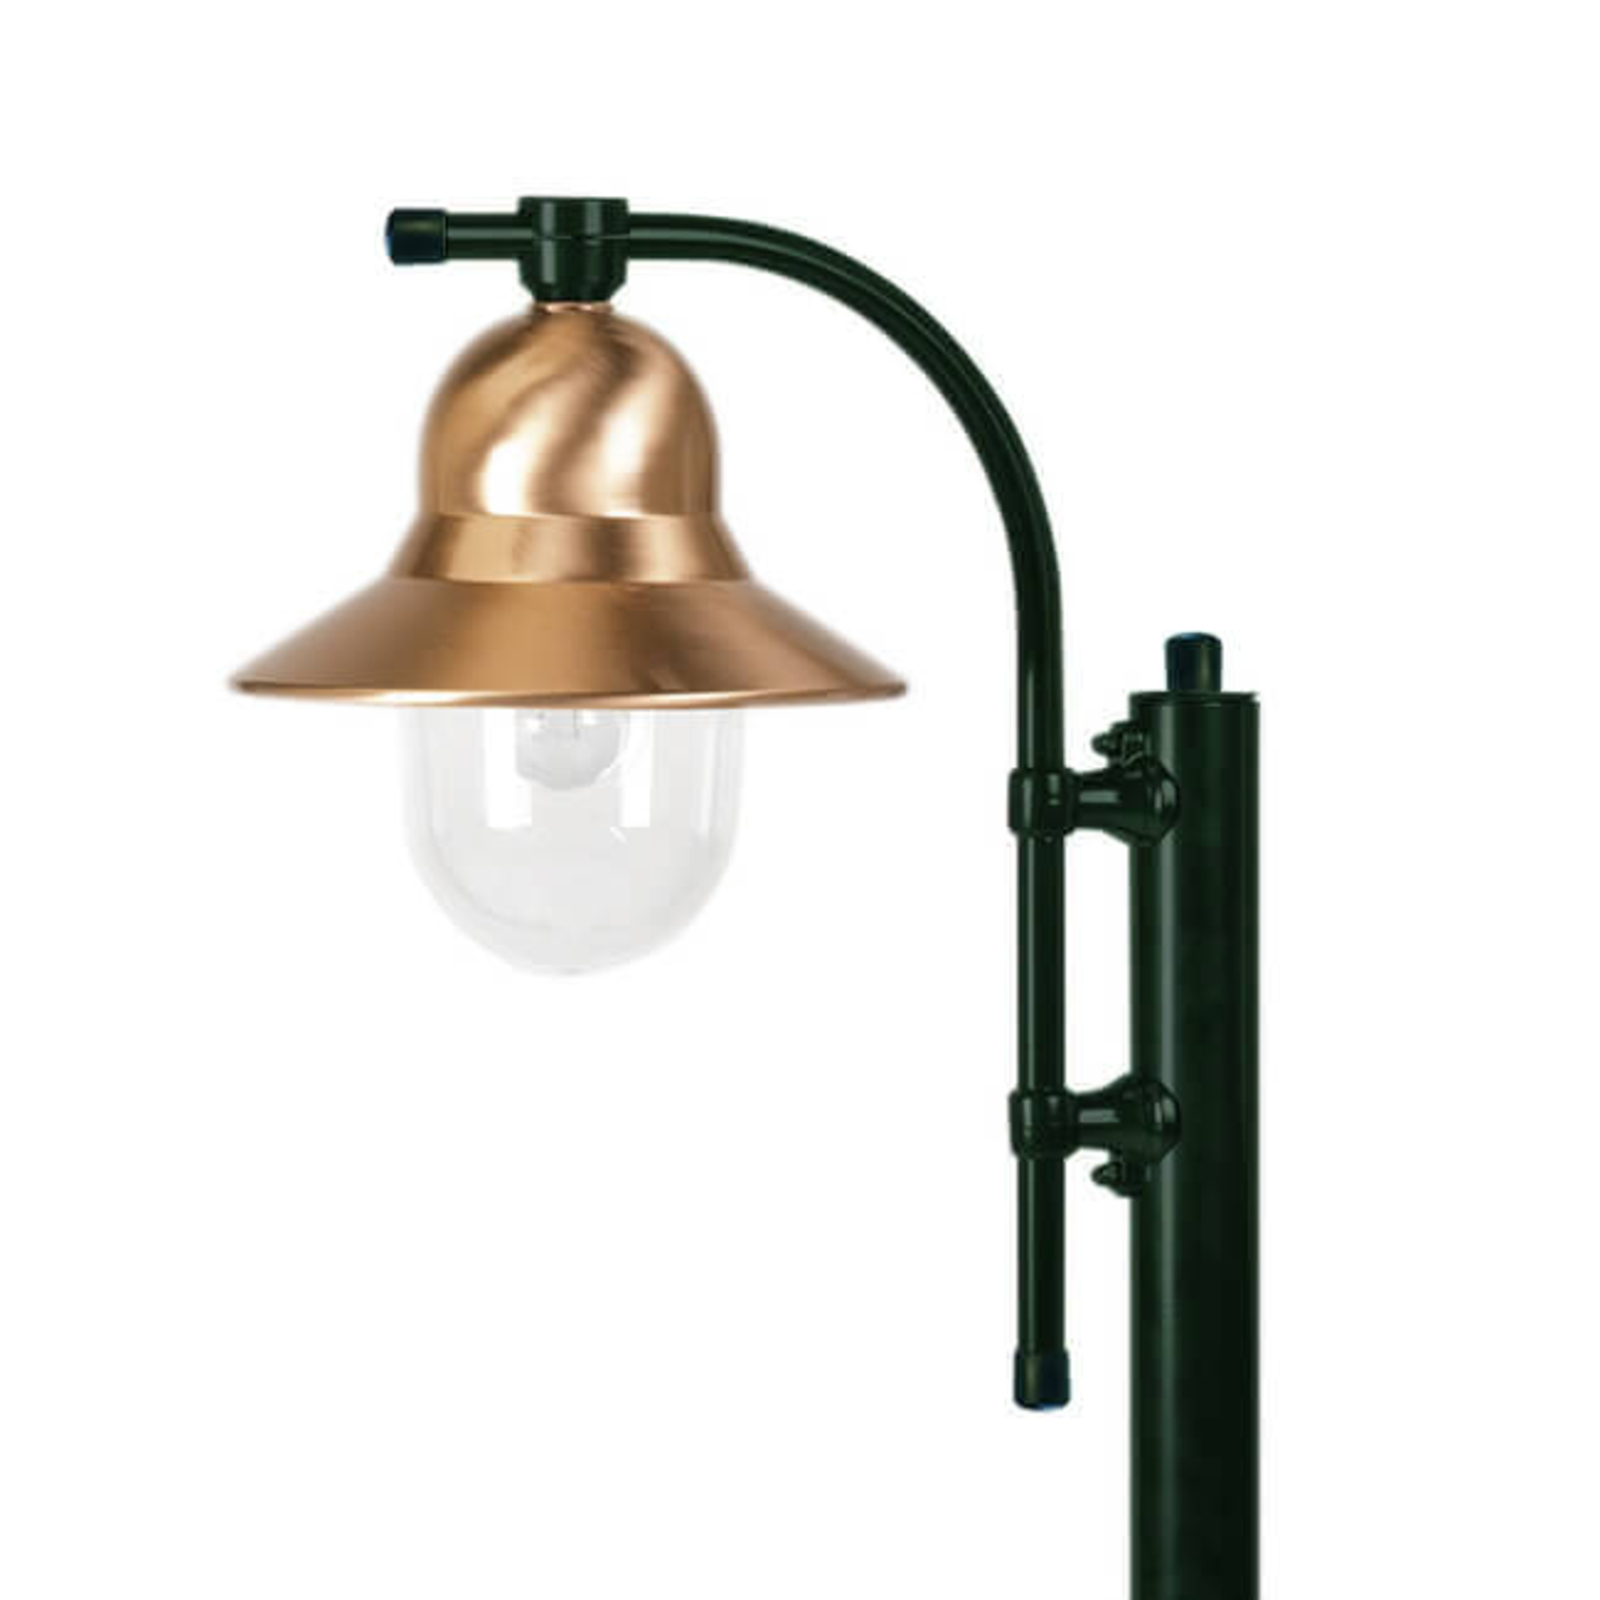 Rúdlámpa Toscane 1-lámpás 150 cm, zöld